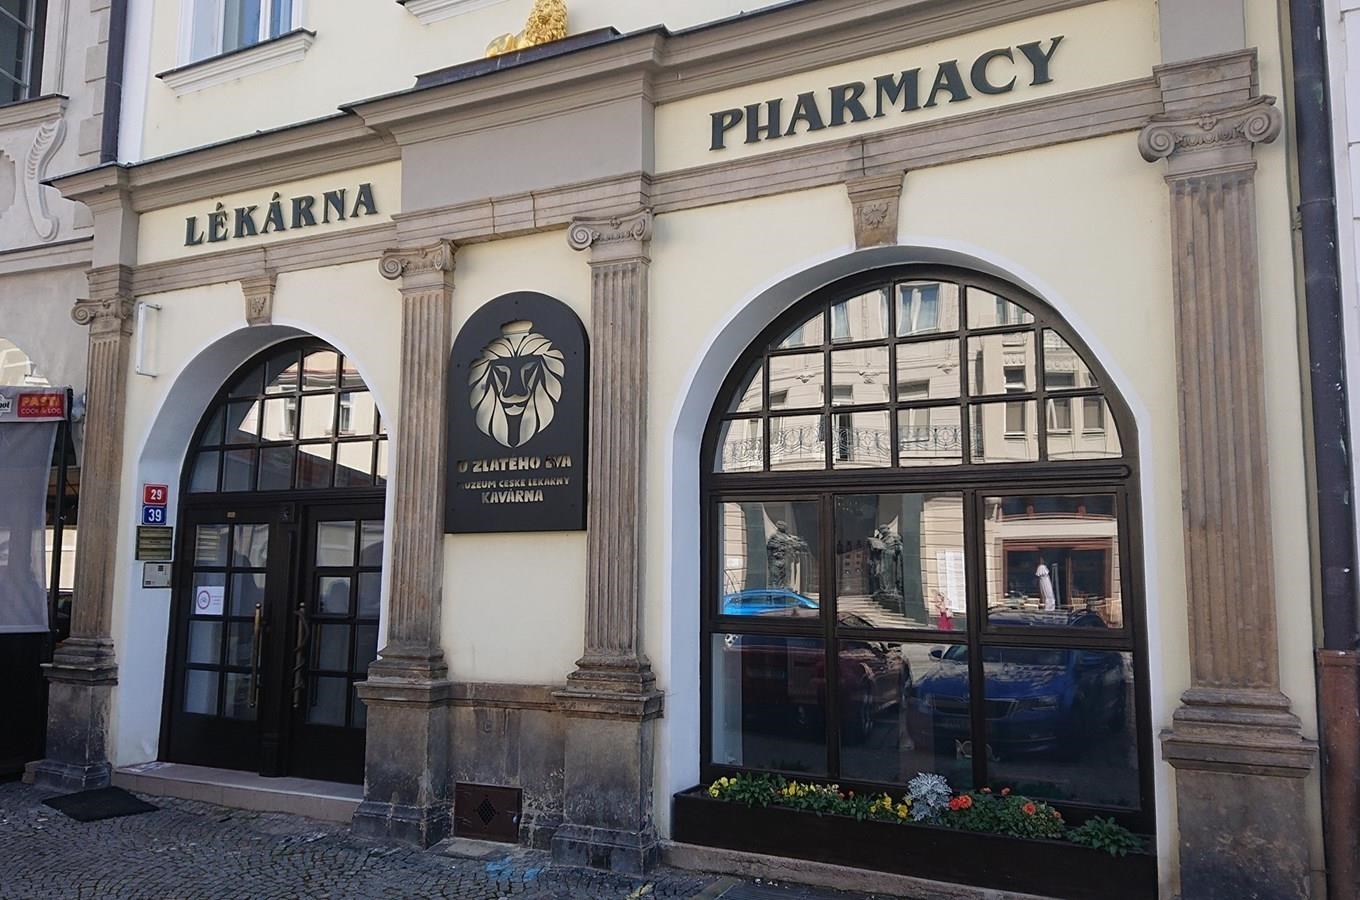 Muzeum české lékárny a kavárna U Zlatého lva v Hradci Králové